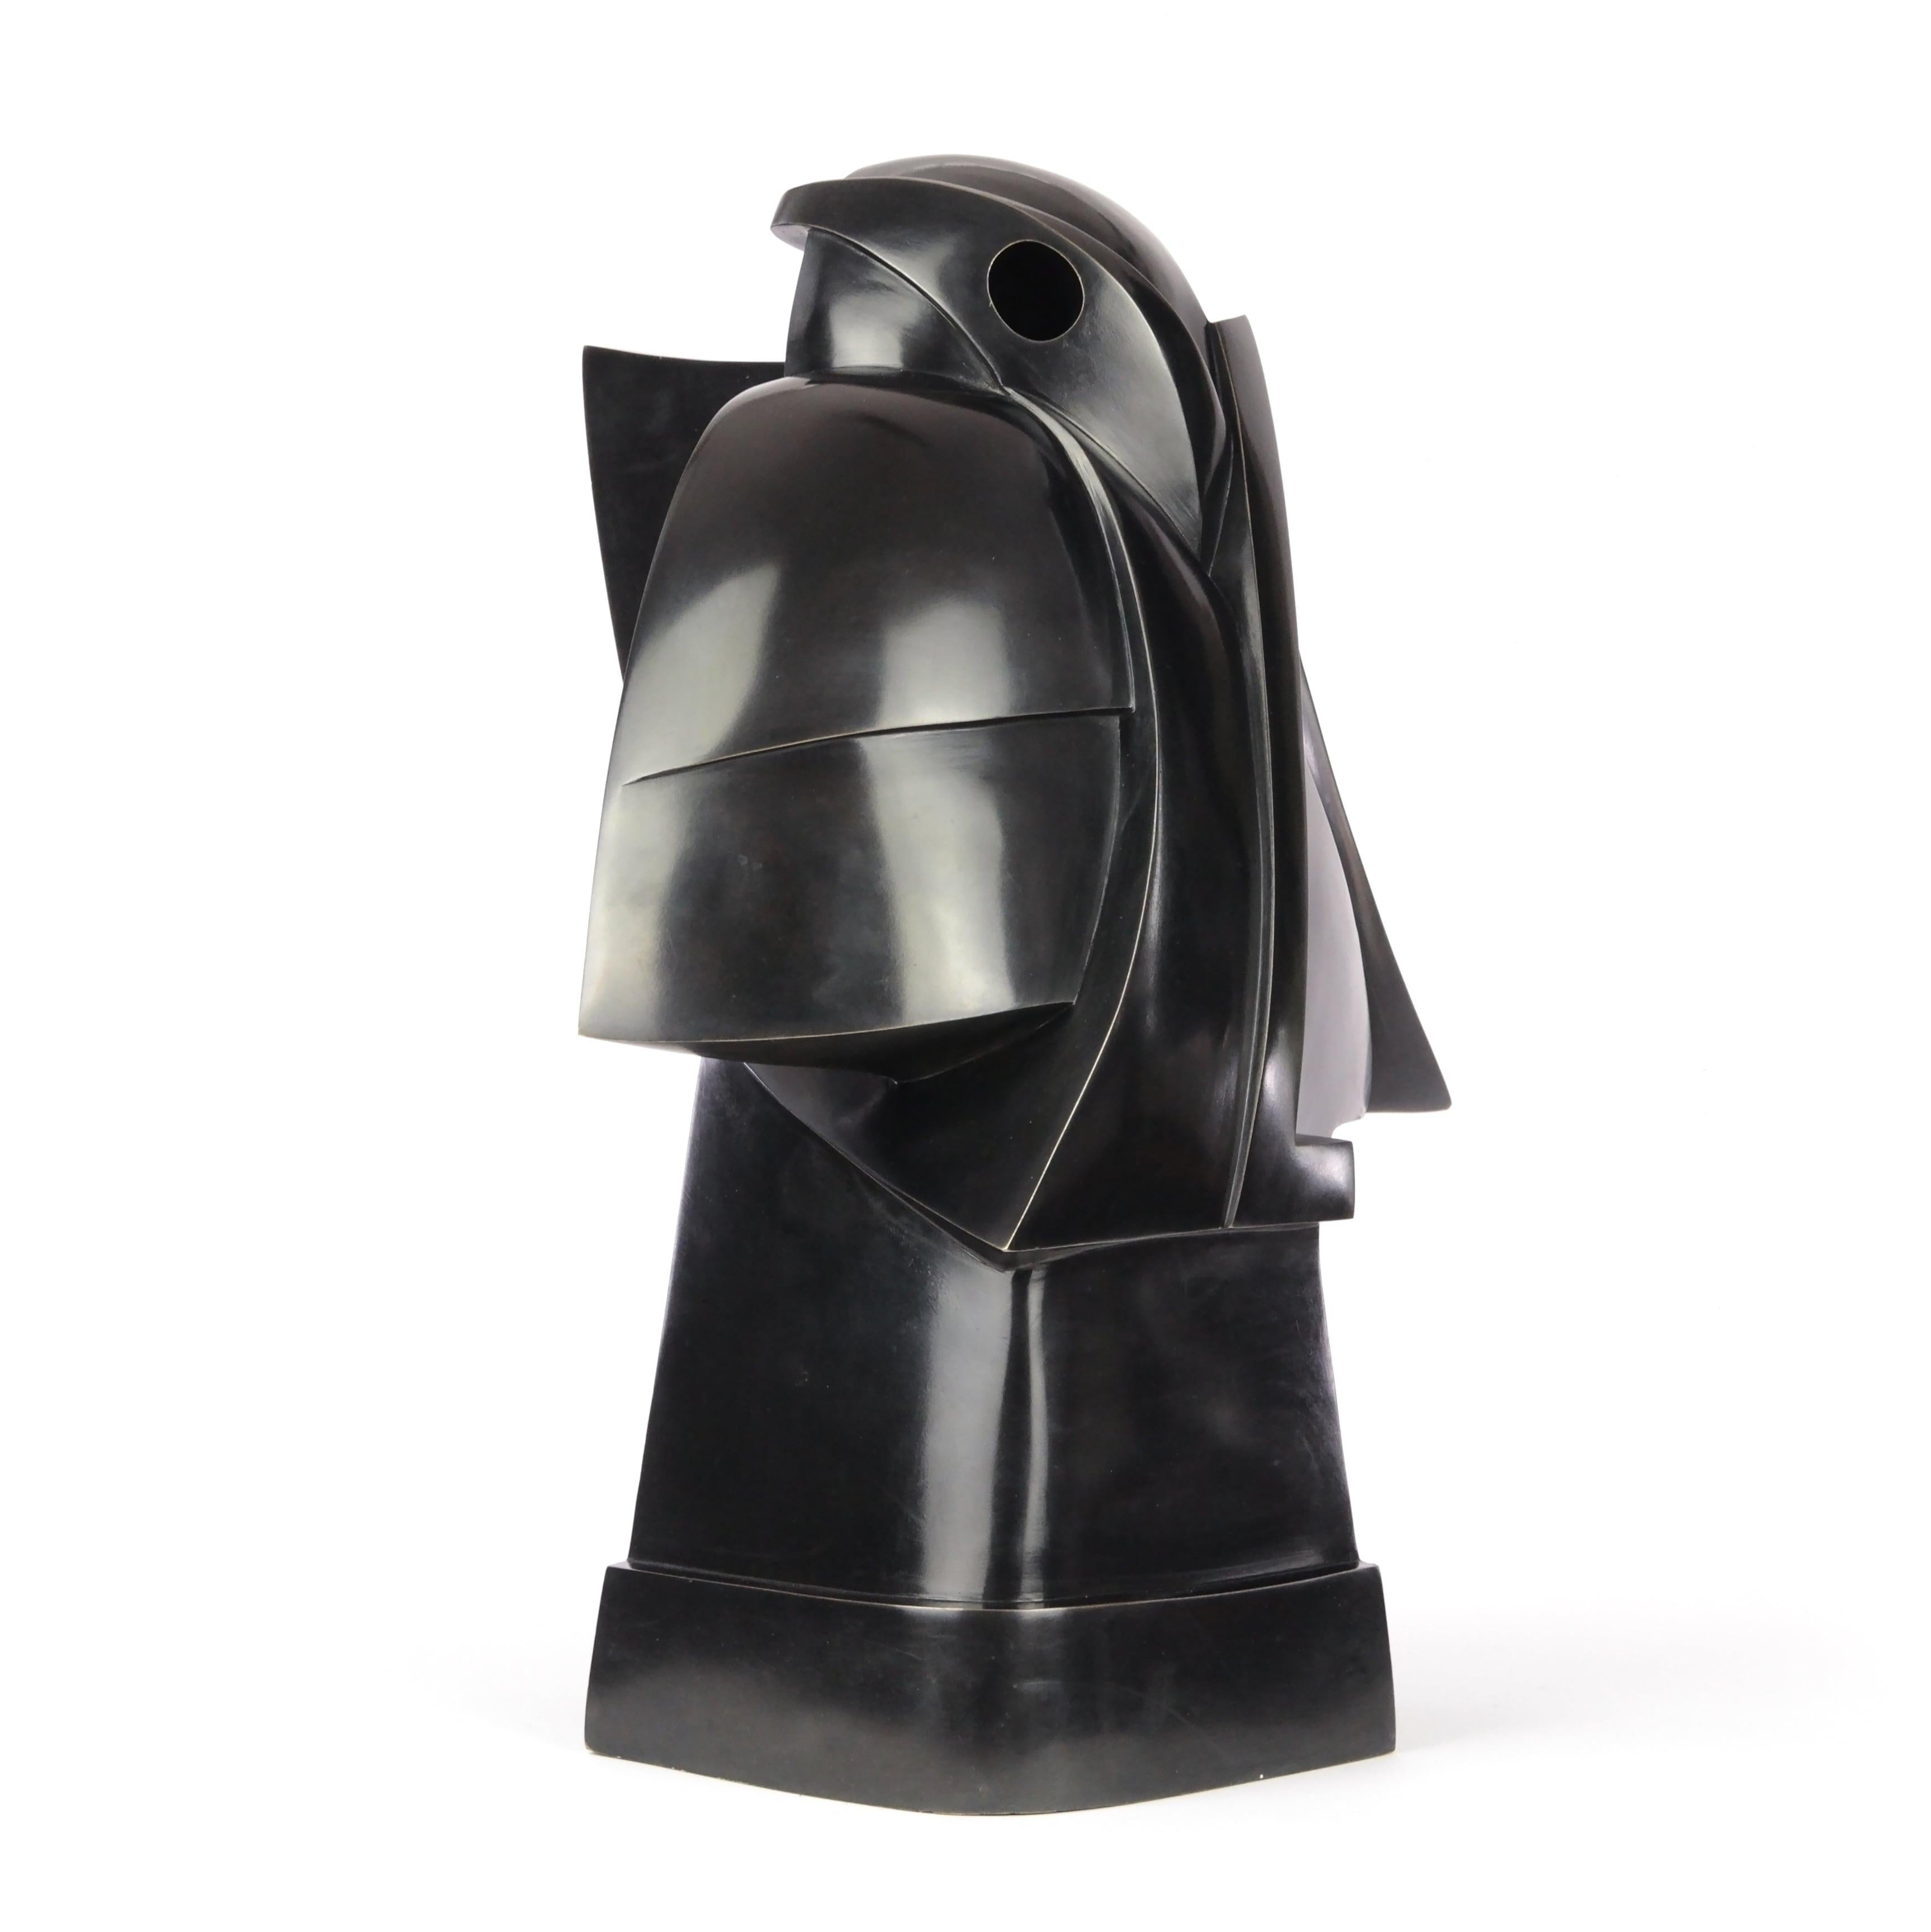 Taorakio est une sculpture en bronze de l'artiste contemporain Jacques Owczarek, dont les dimensions sont de 45 × 42 × 27 cm (17,7 × 16,5 × 10,6 in). La sculpture est signée et numérotée, elle fait partie d'une édition limitée à 8 exemplaires + 4